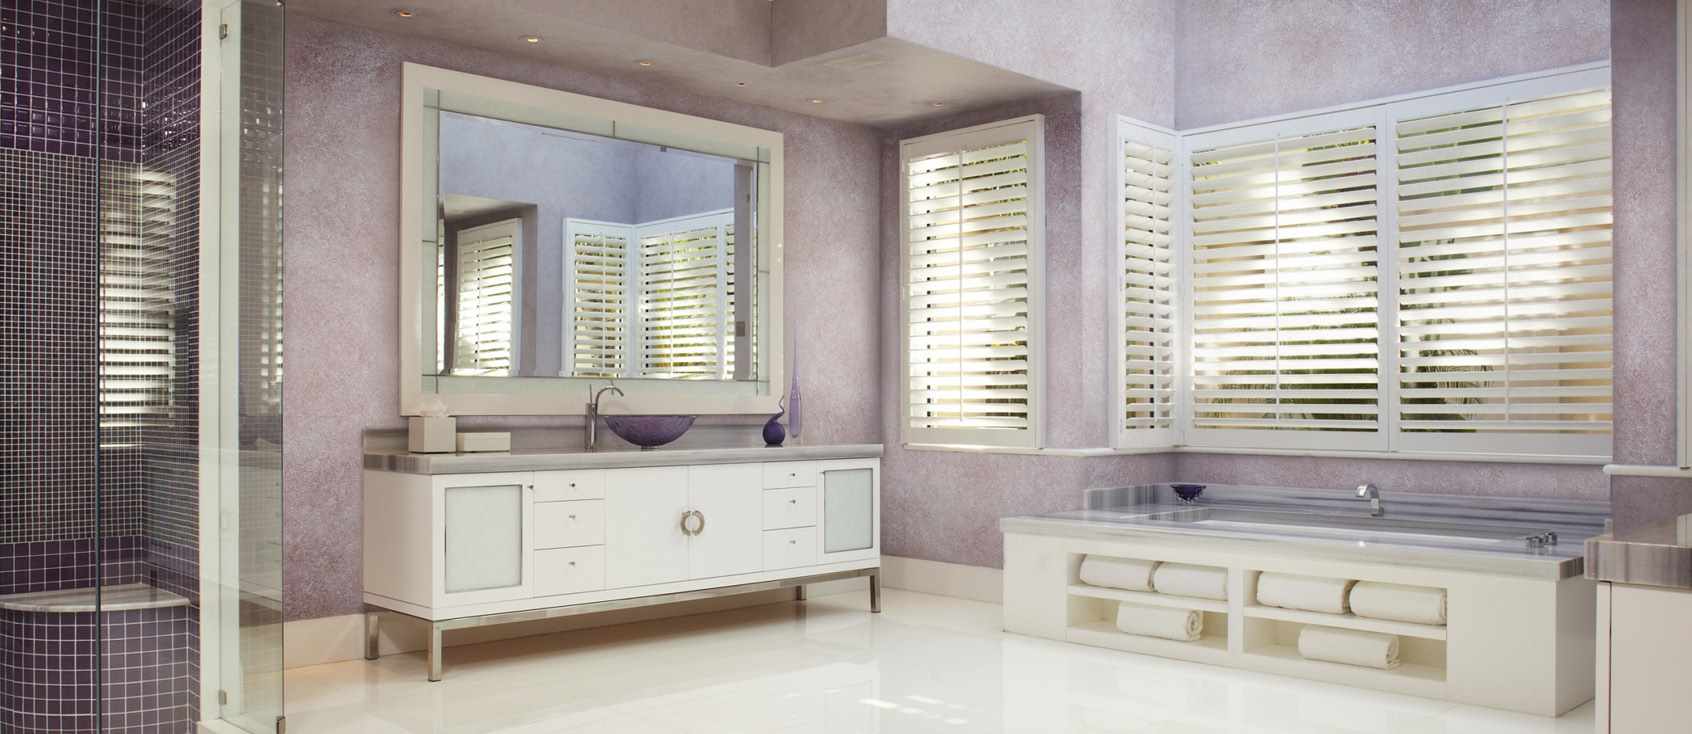 l'idée d'utiliser du plâtre décoratif inhabituel à l'intérieur de la salle de bain